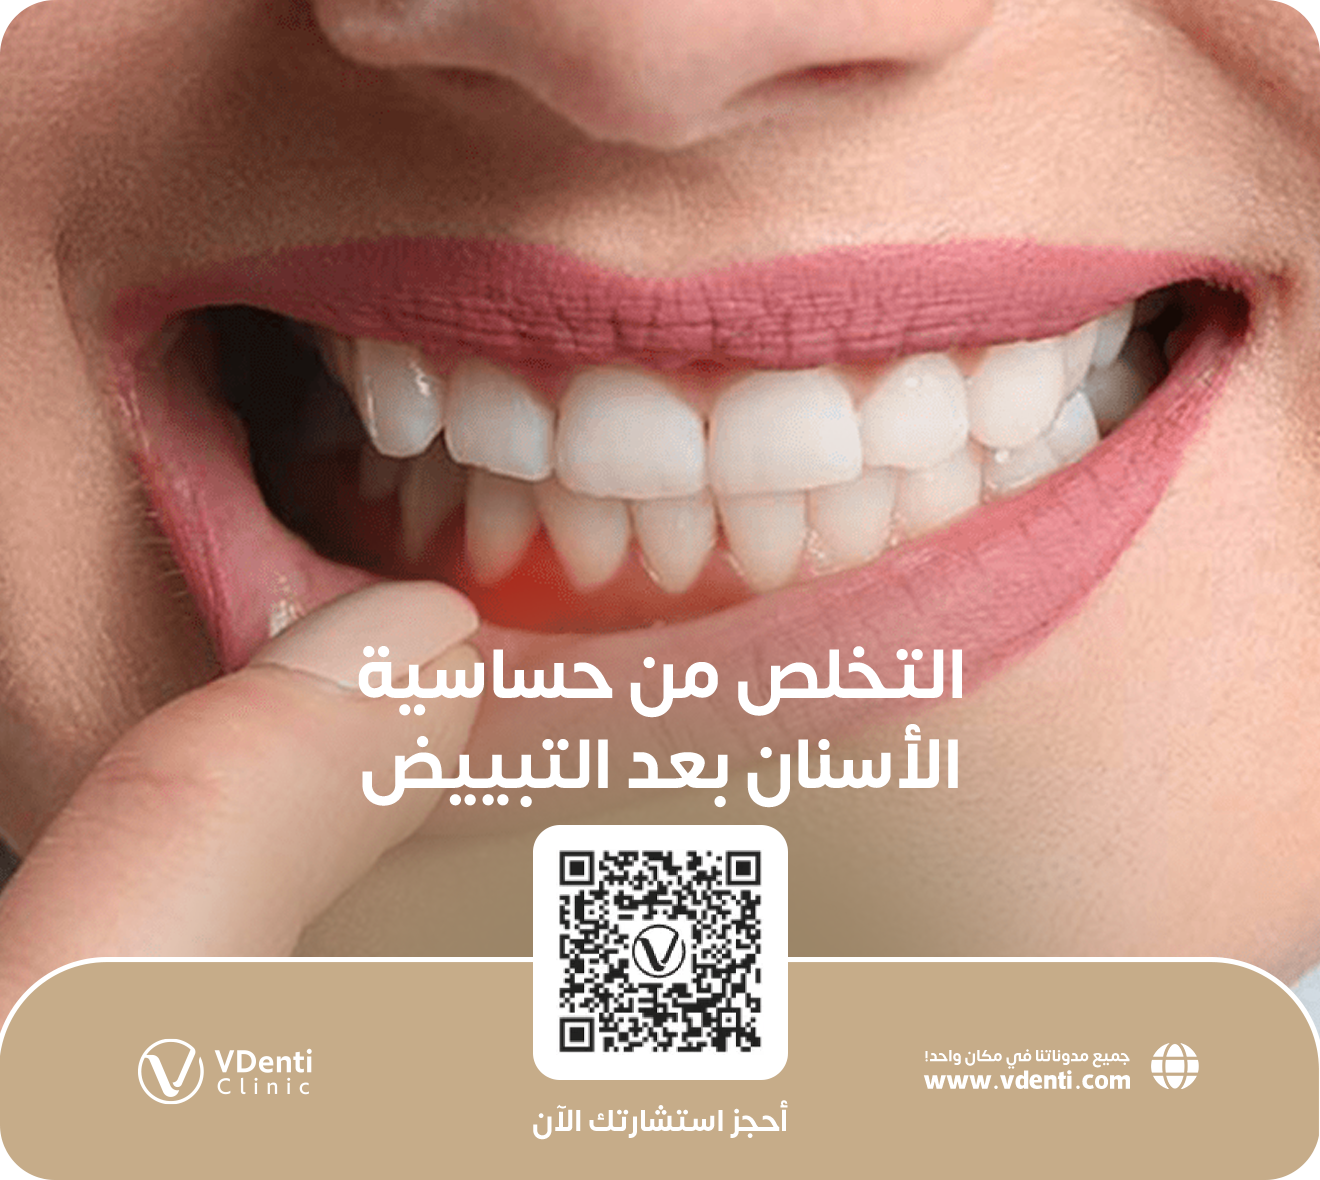 التخلص من حساسية الأسنان بعد التبييض